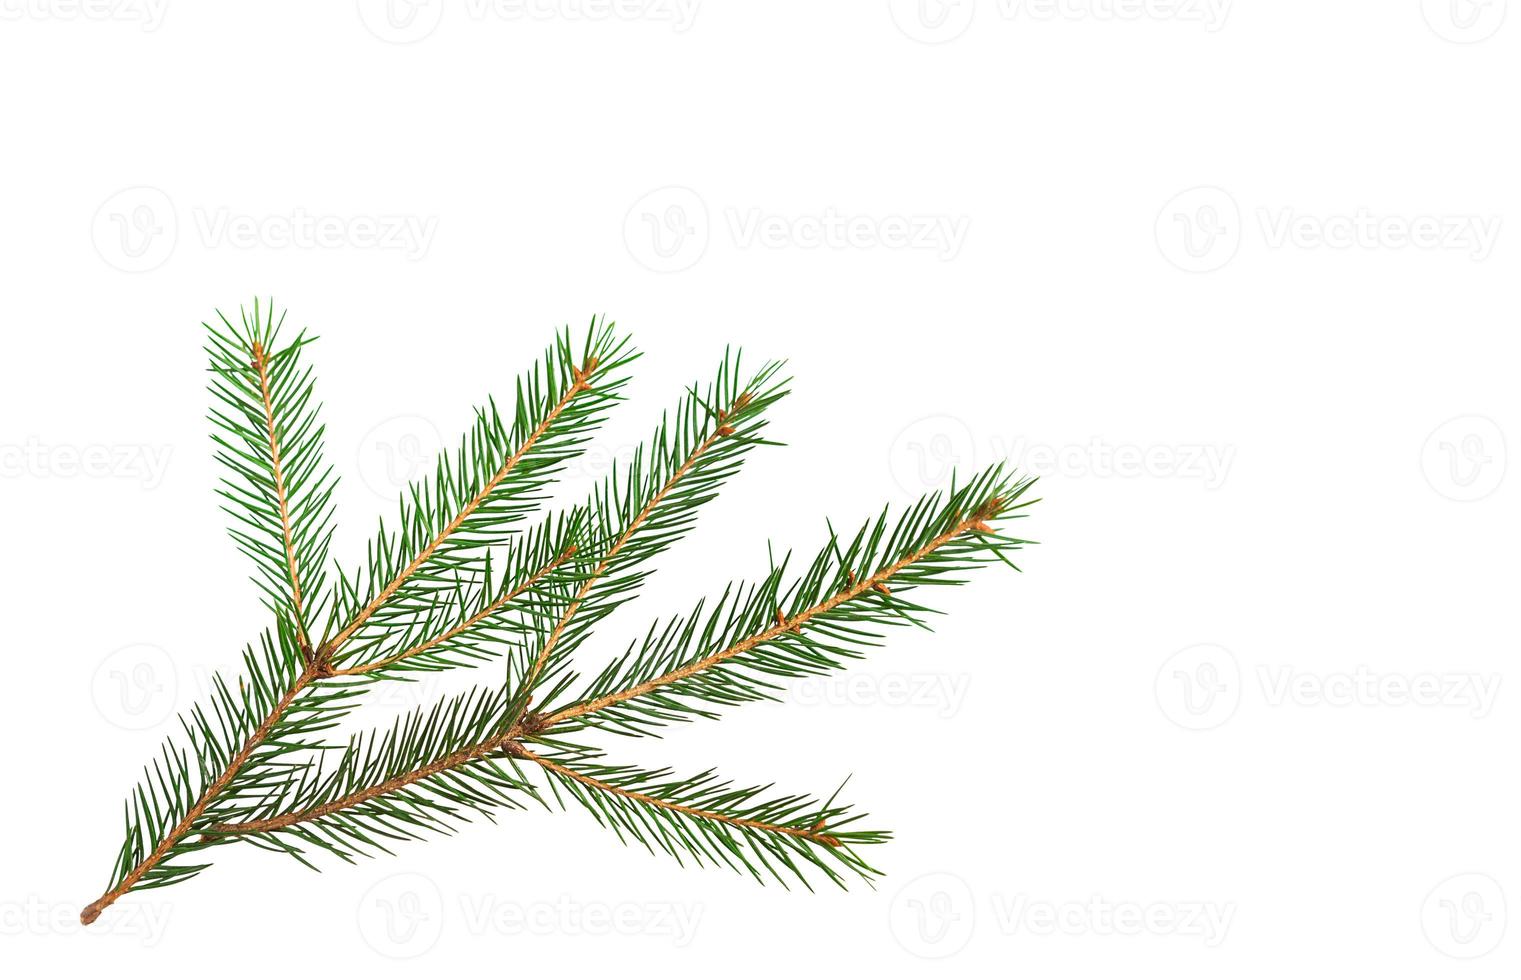 grön gran gren med korta nålar närbild på en vit bakgrund, isolera. julgran, dekoration. nytt år, jul. vintergrönt barrträd, vanlig gran foto